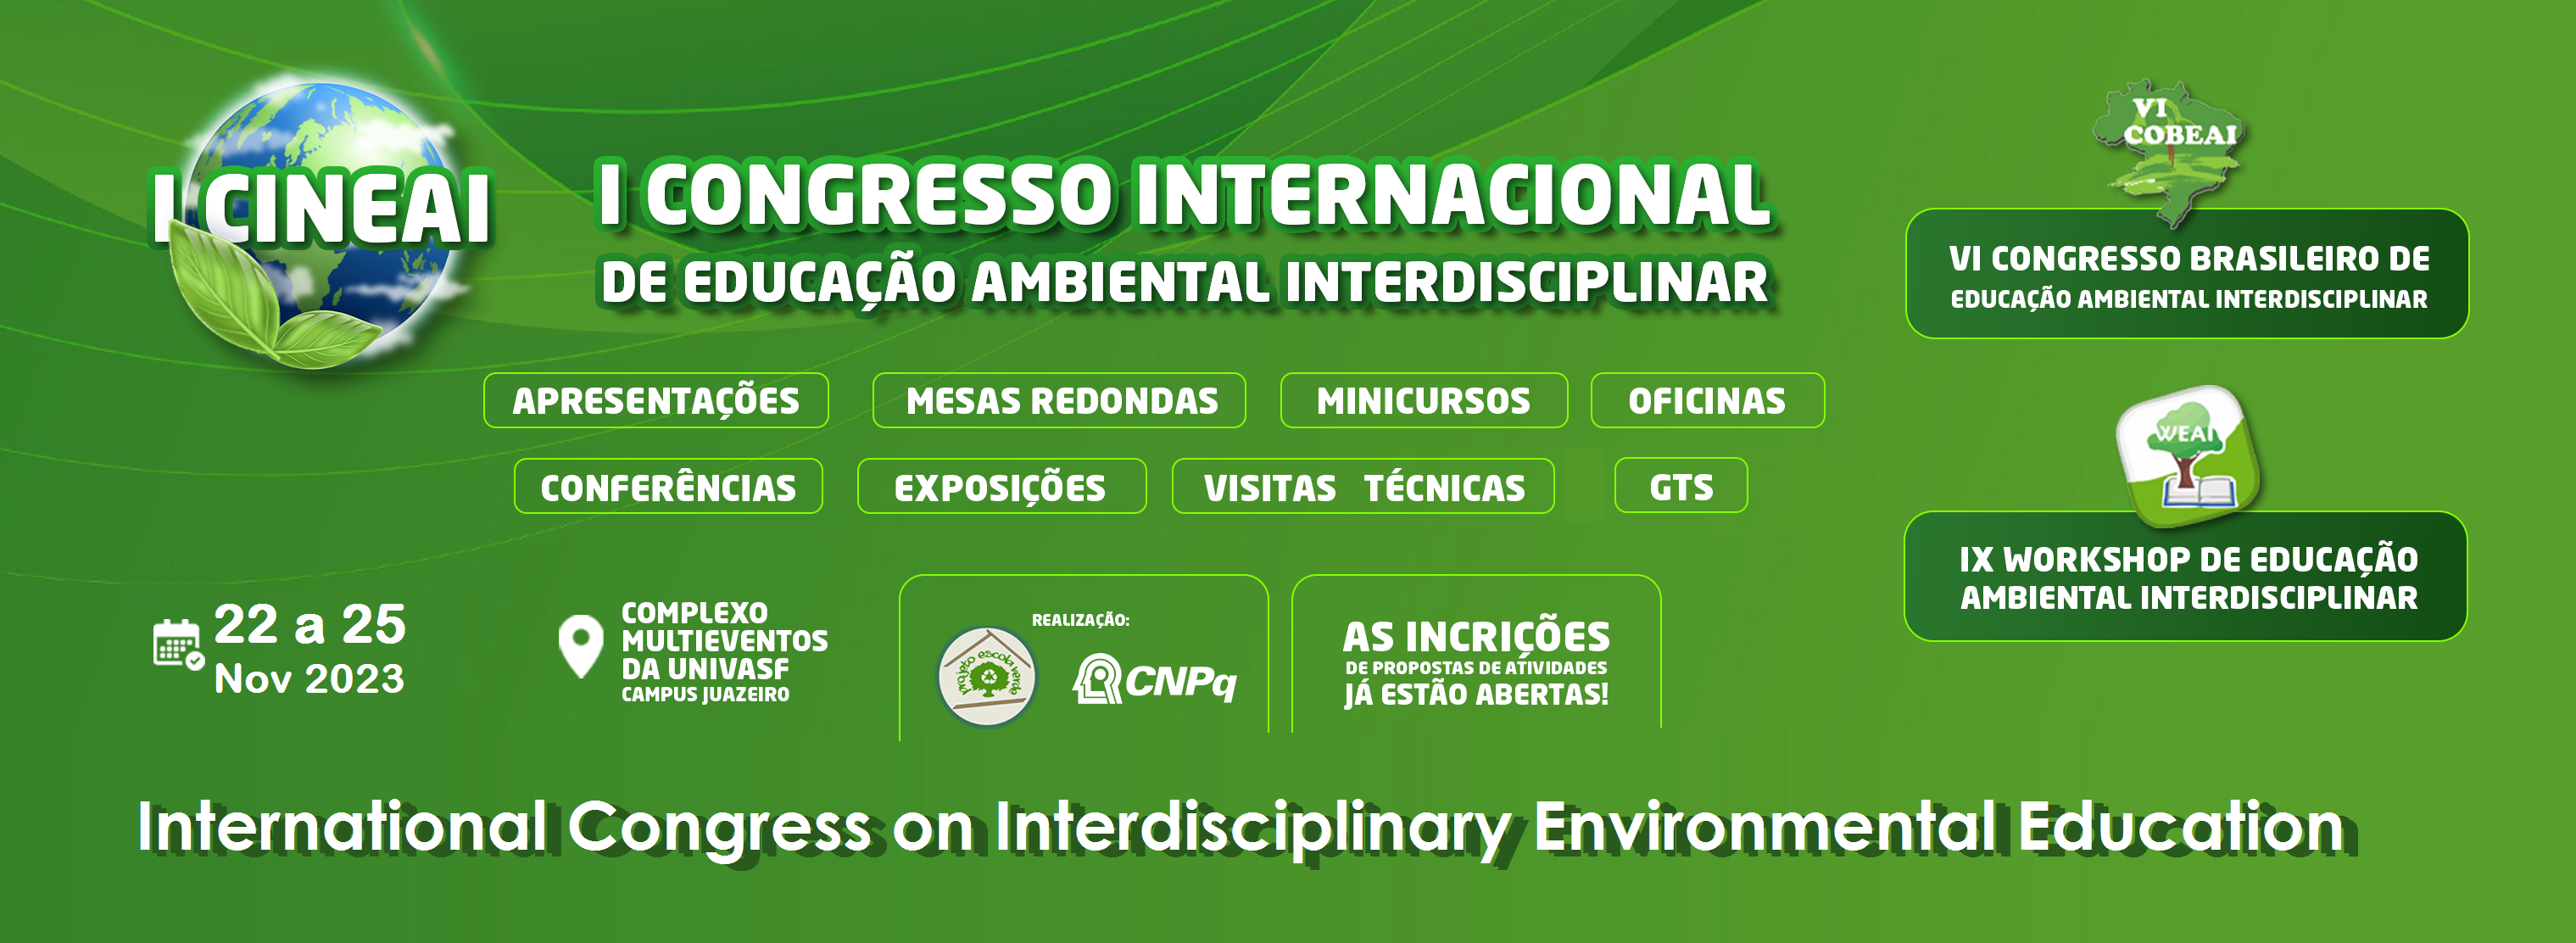 I Congresso Internacional de Educação Ambiental Interdisciplinar (I CINEAI)